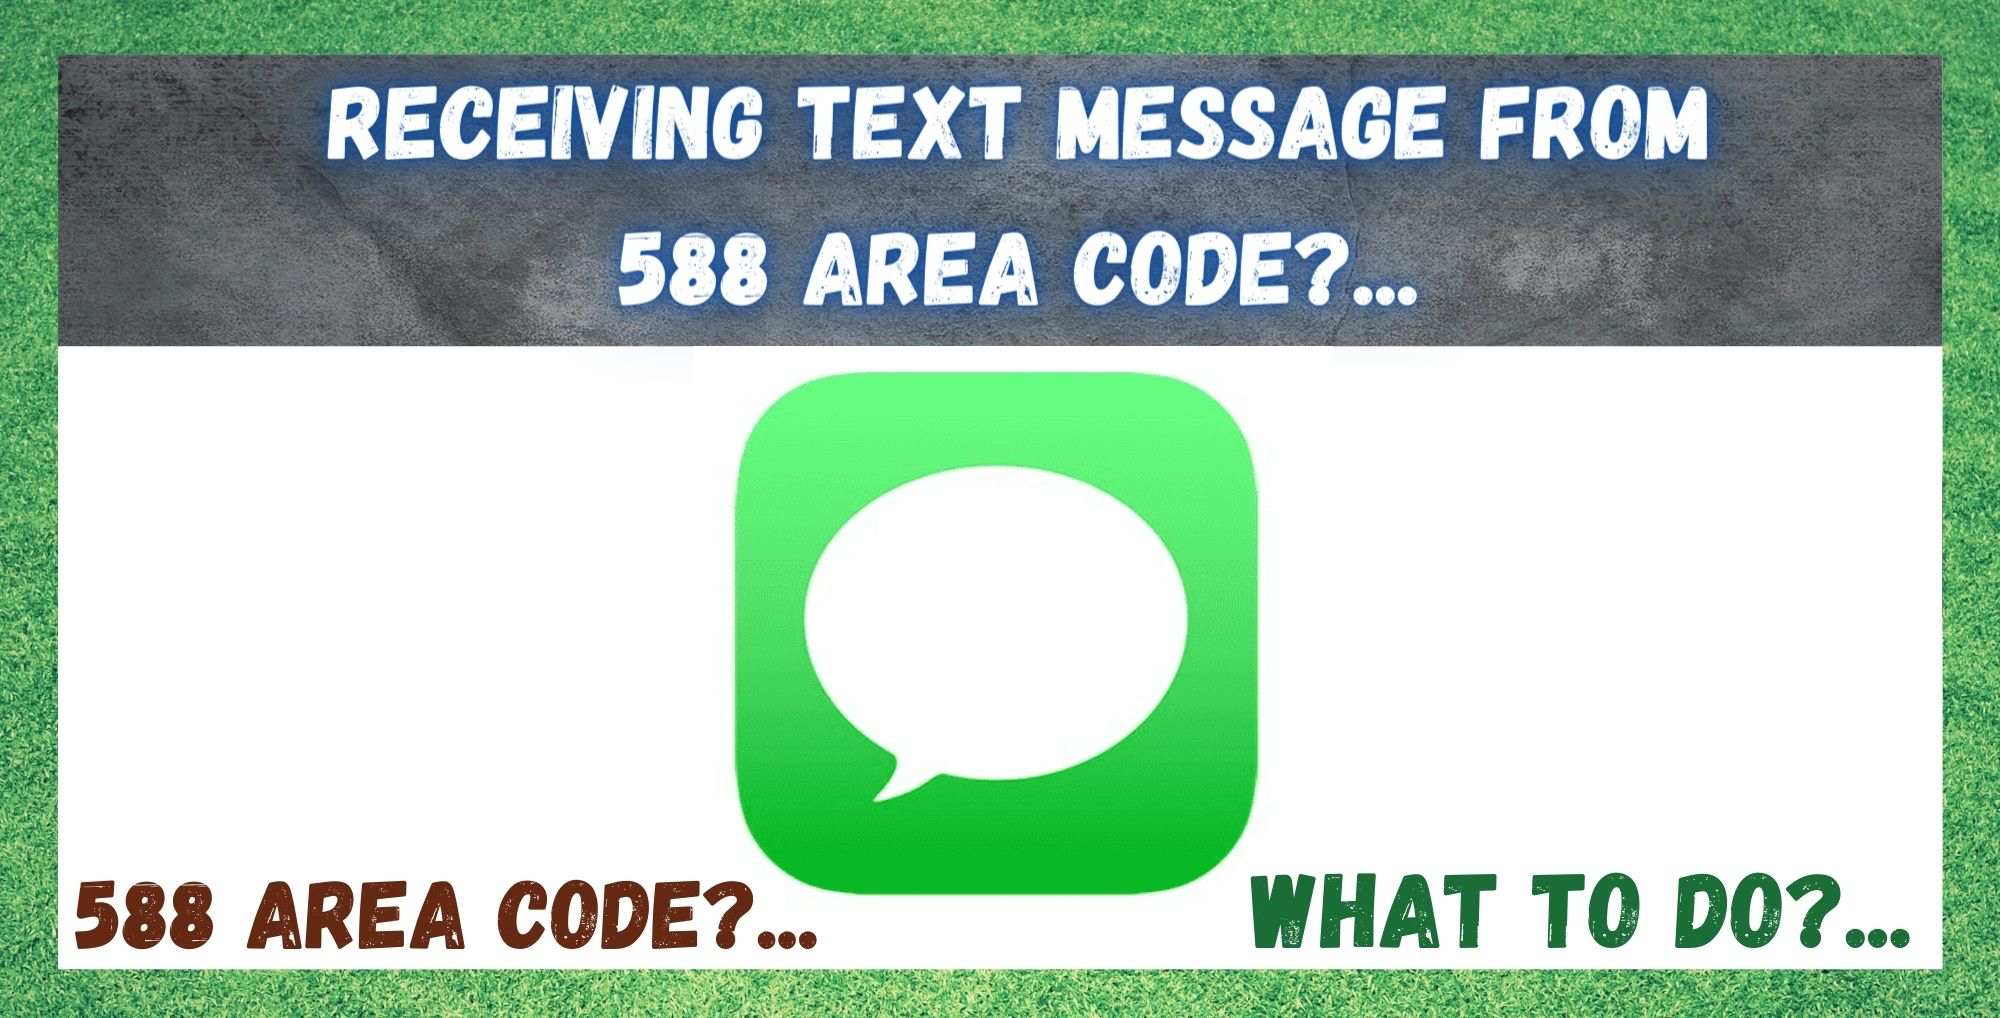 588 क्षेत्र कोड बाट पाठ सन्देश प्राप्त गर्दै